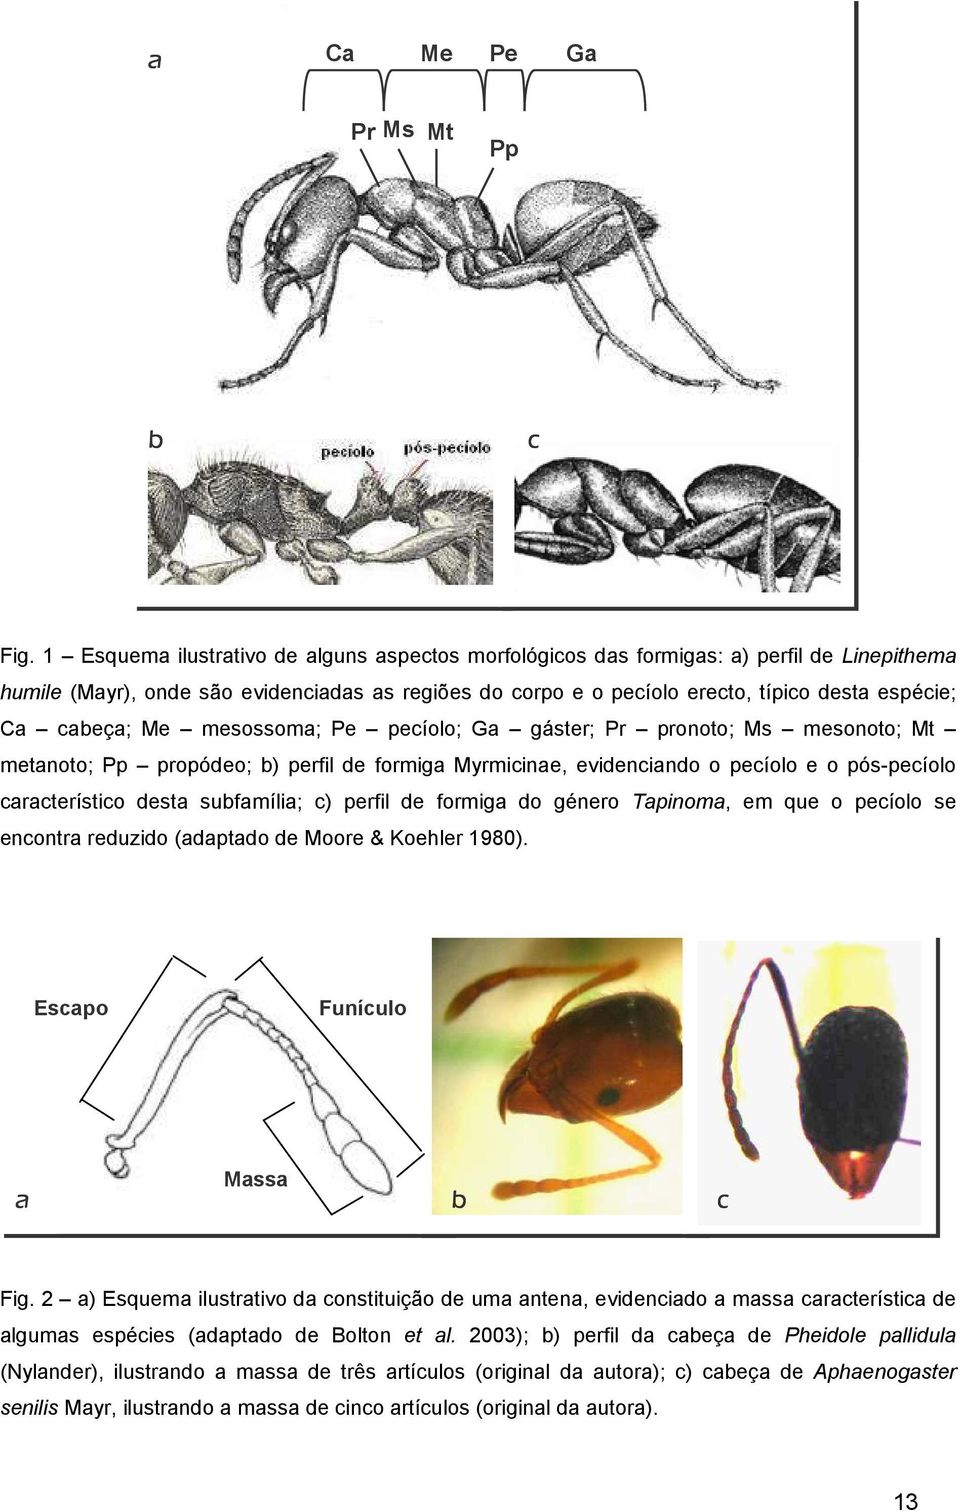 cabeça; Me mesossoma; Pe pecíolo; Ga gáster; Pr pronoto; Ms mesonoto; Mt metanoto; Pp propódeo; b) perfil de formiga Myrmicinae, evidenciando o pecíolo e o pós-pecíolo característico desta